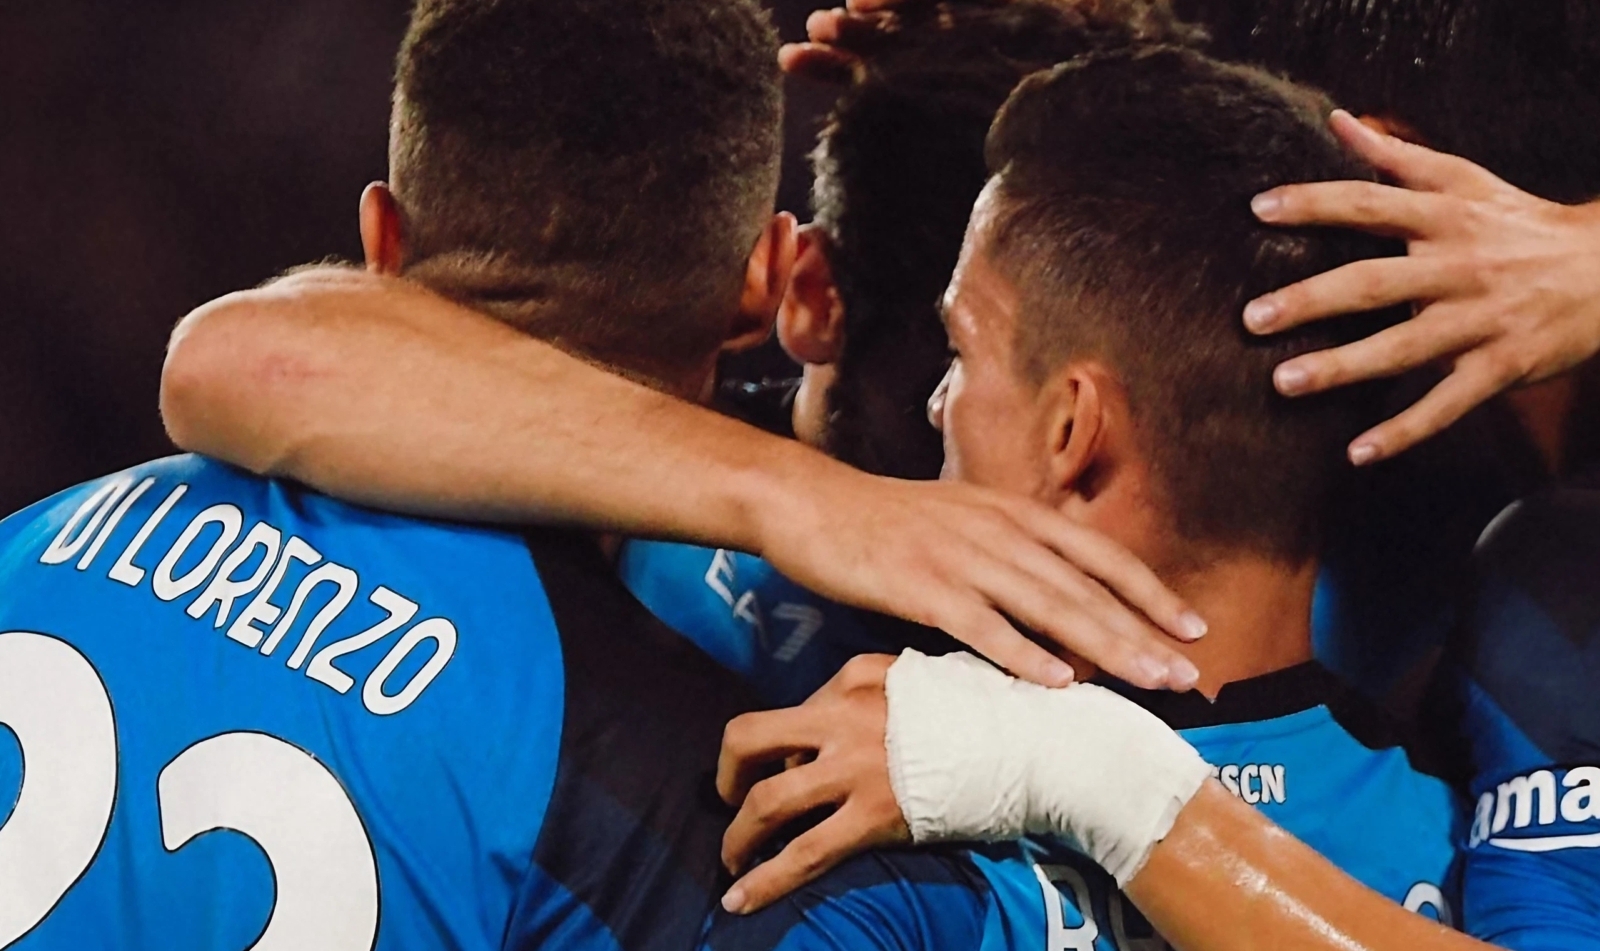 Calciatori SSC Napoli esultano dopo una vittoria